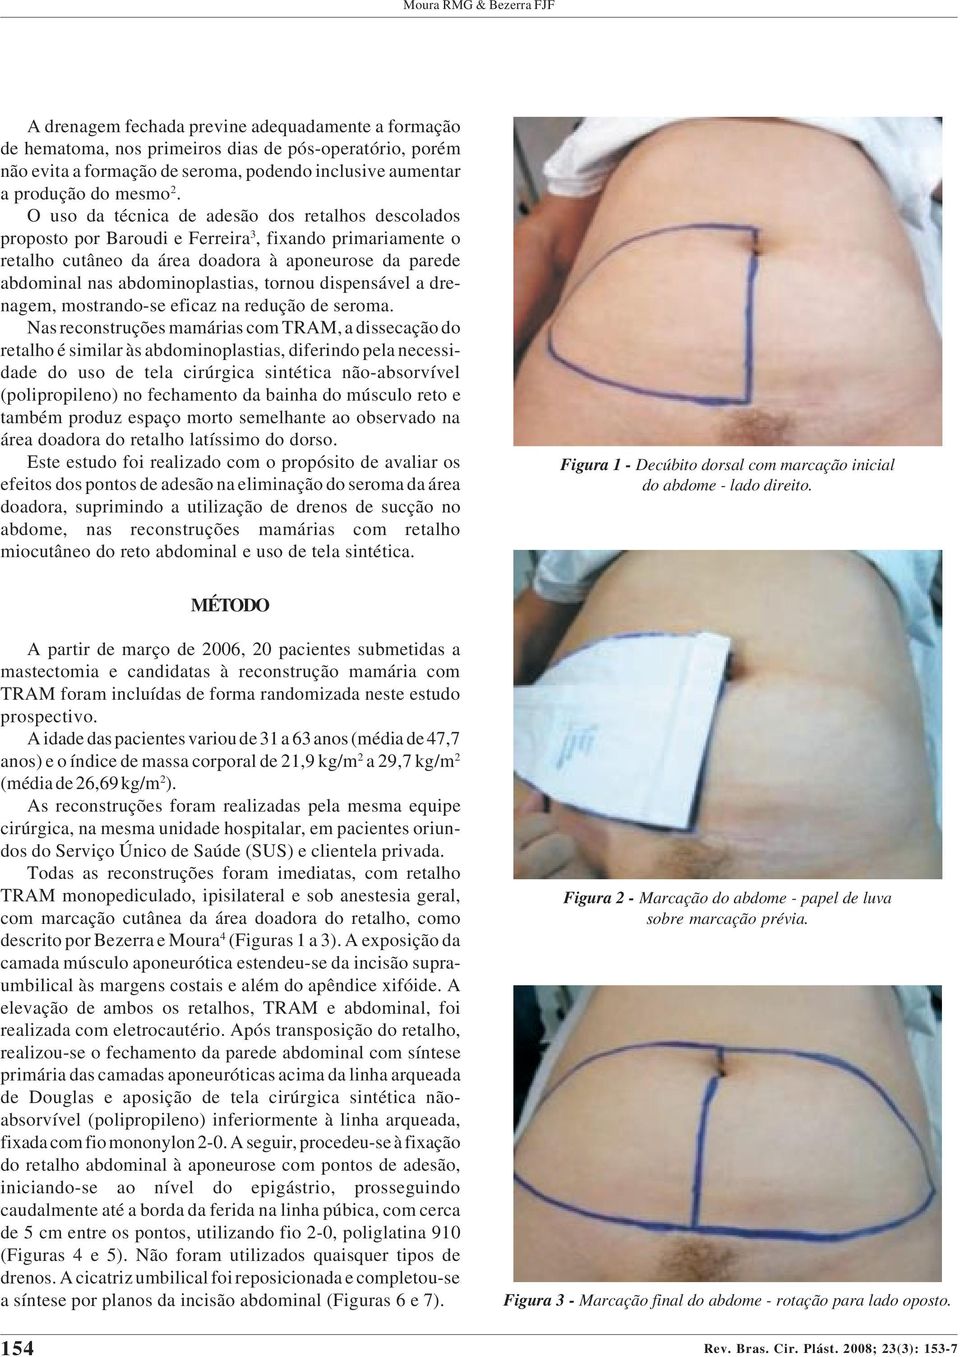 O uso da técnica de adesão dos retalhos descolados proposto por Baroudi e Ferreira 3, fixando primariamente o retalho cutâneo da área doadora à aponeurose da parede abdominal nas abdominoplastias,